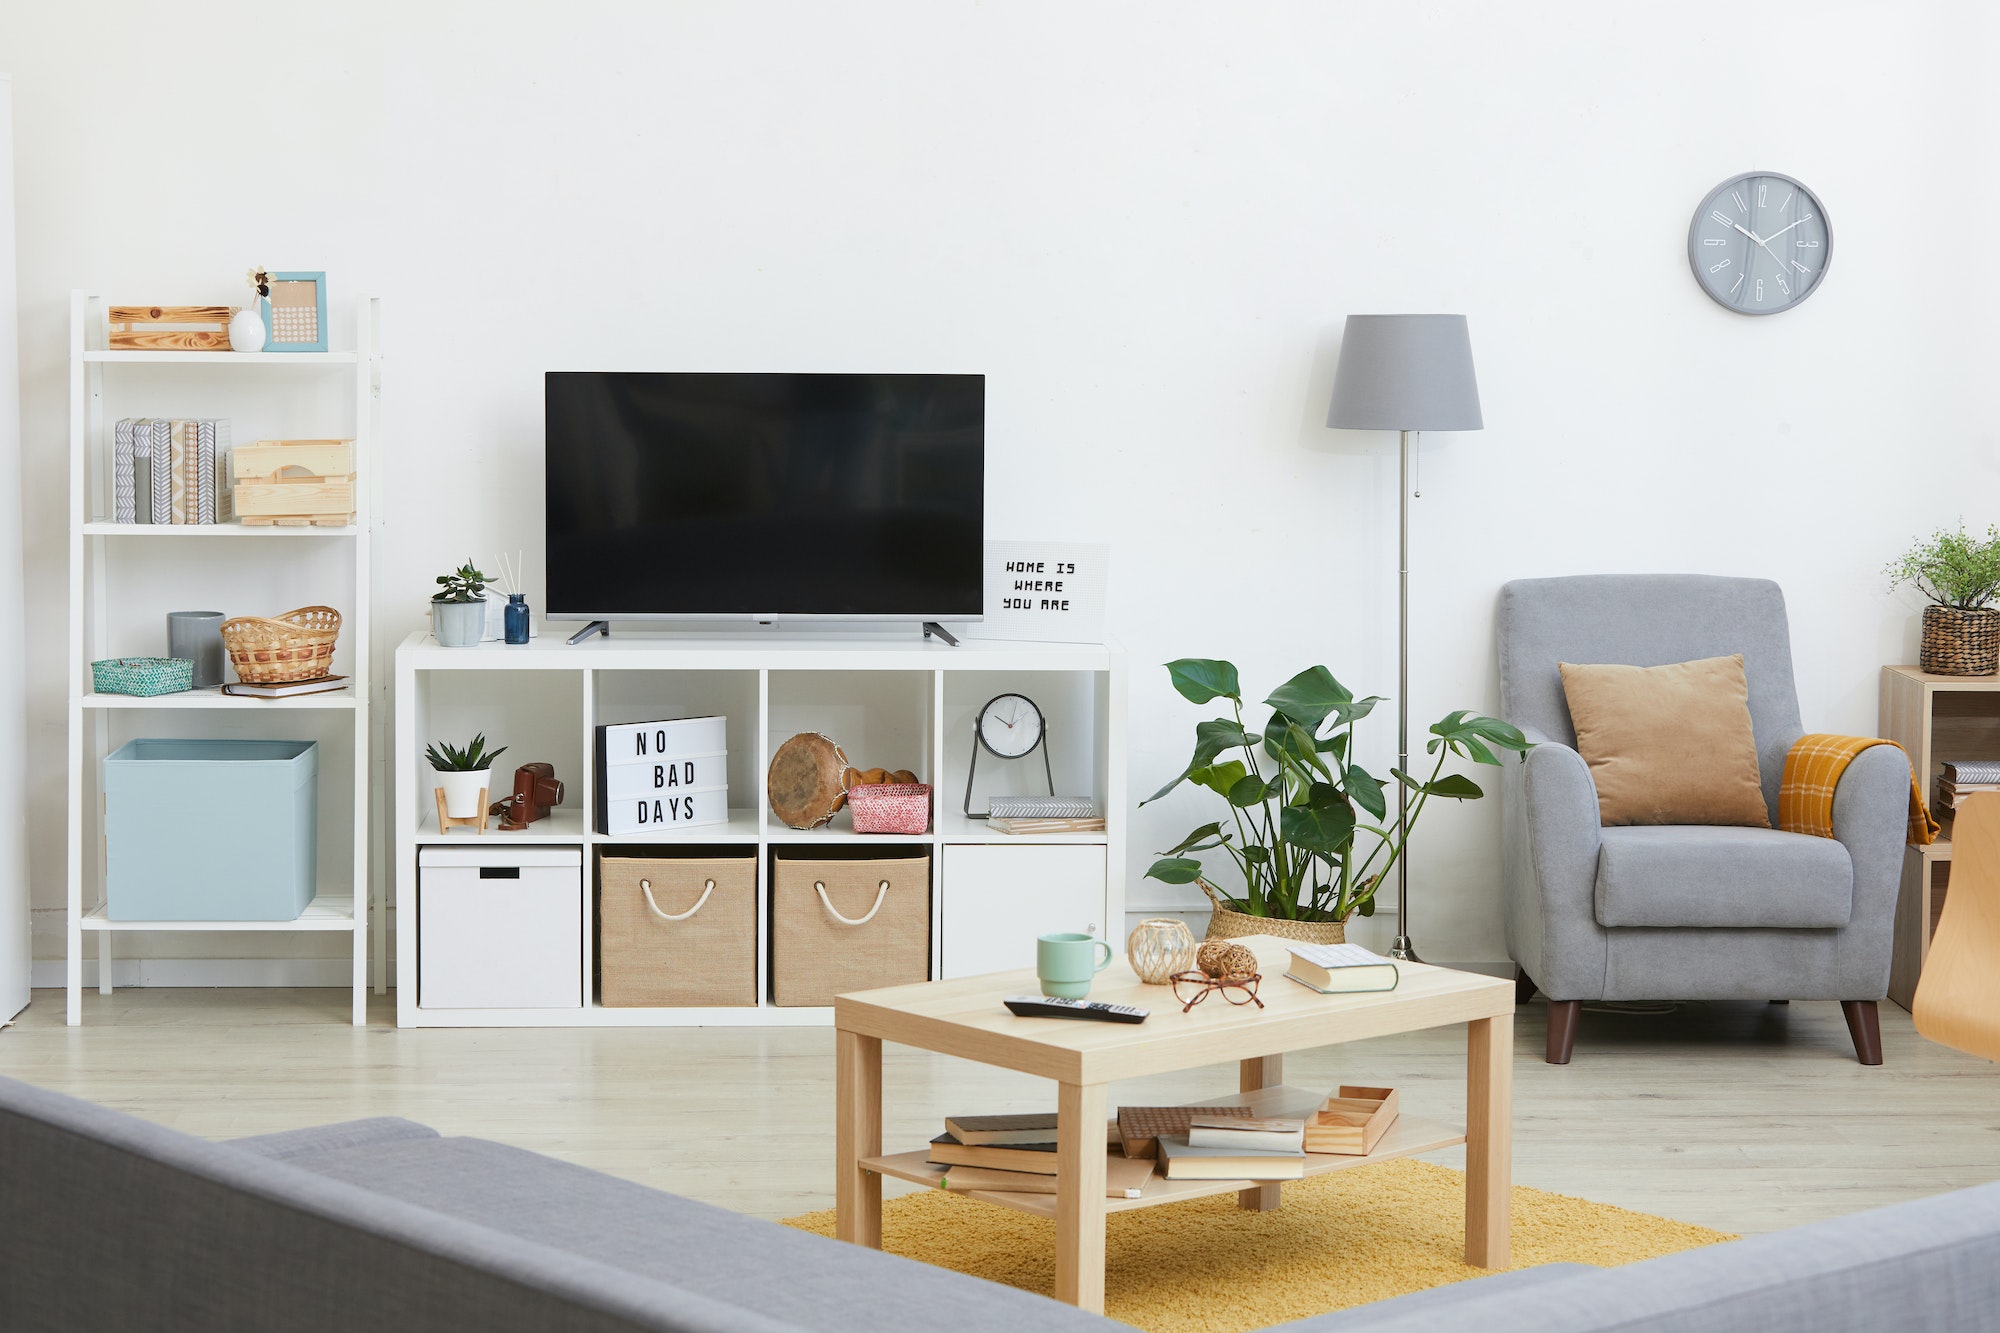 Réaliser soi-même son meuble TV : guide étape par étape